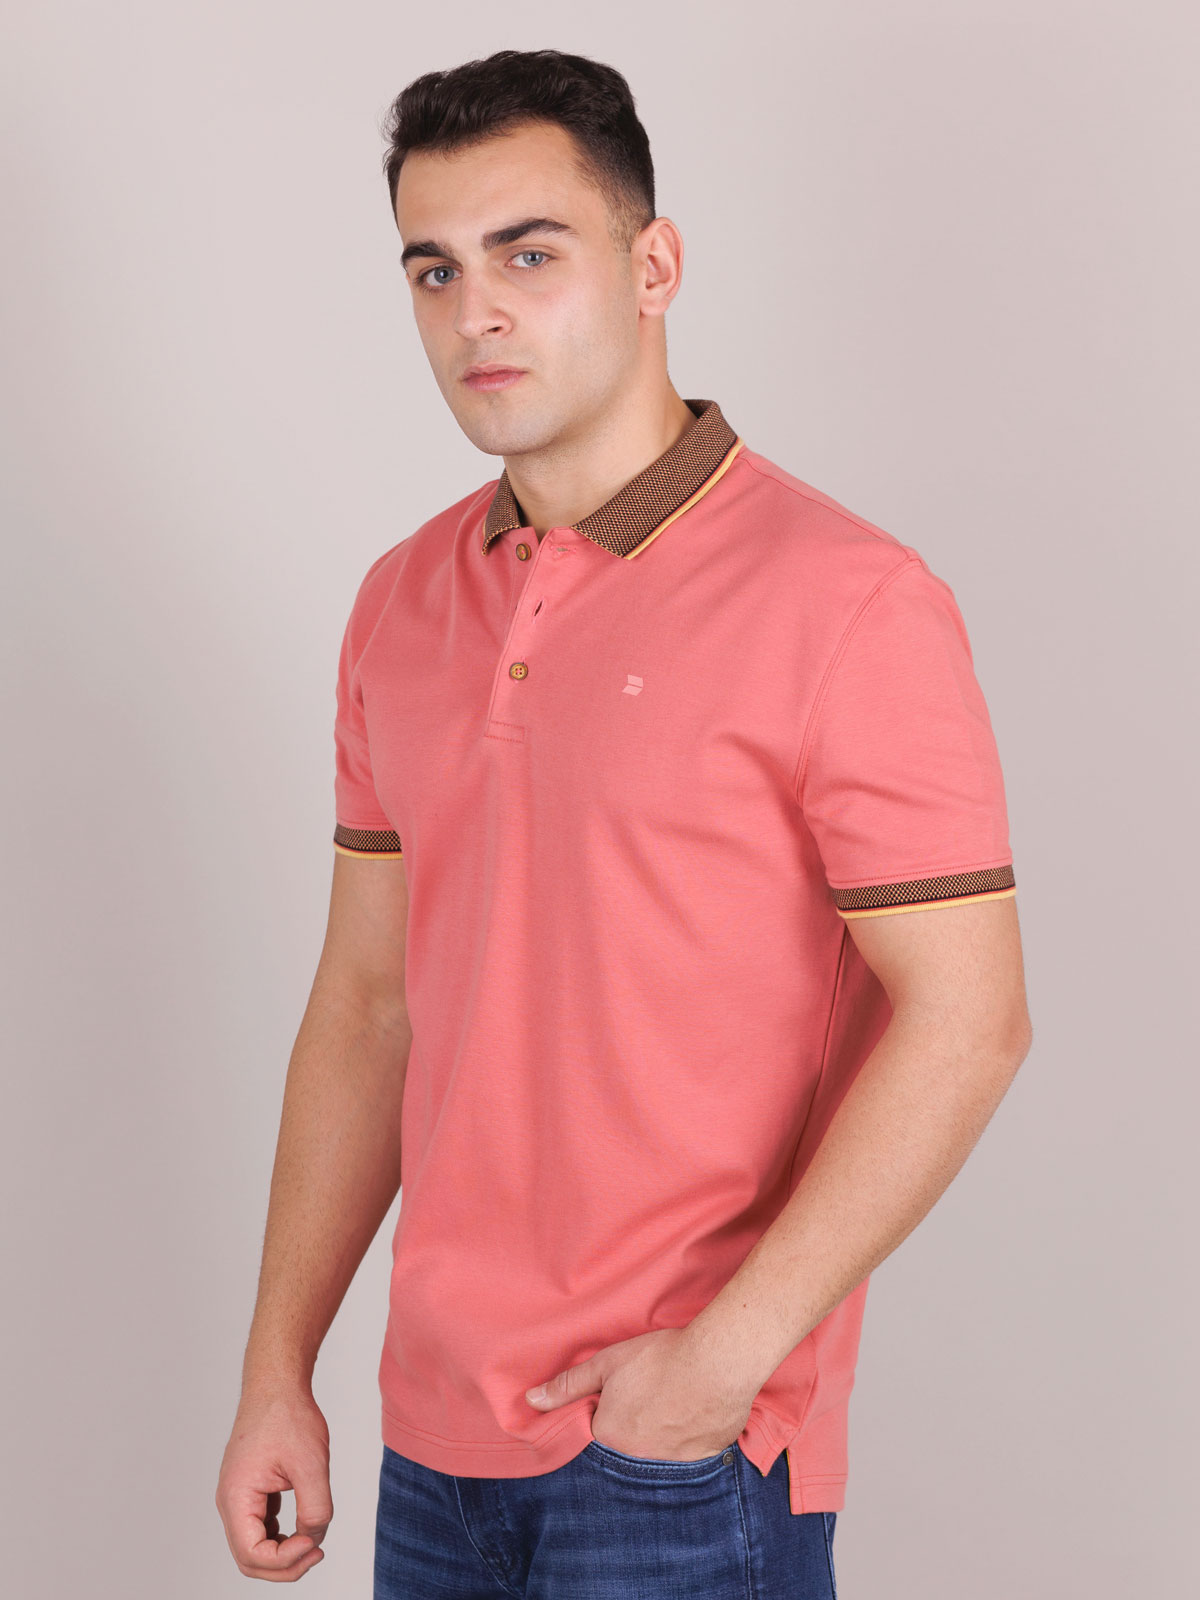 Μπλούζα με κοντό μανίκι σε κοραλί χρώμα - 94411 € 30.93 img2